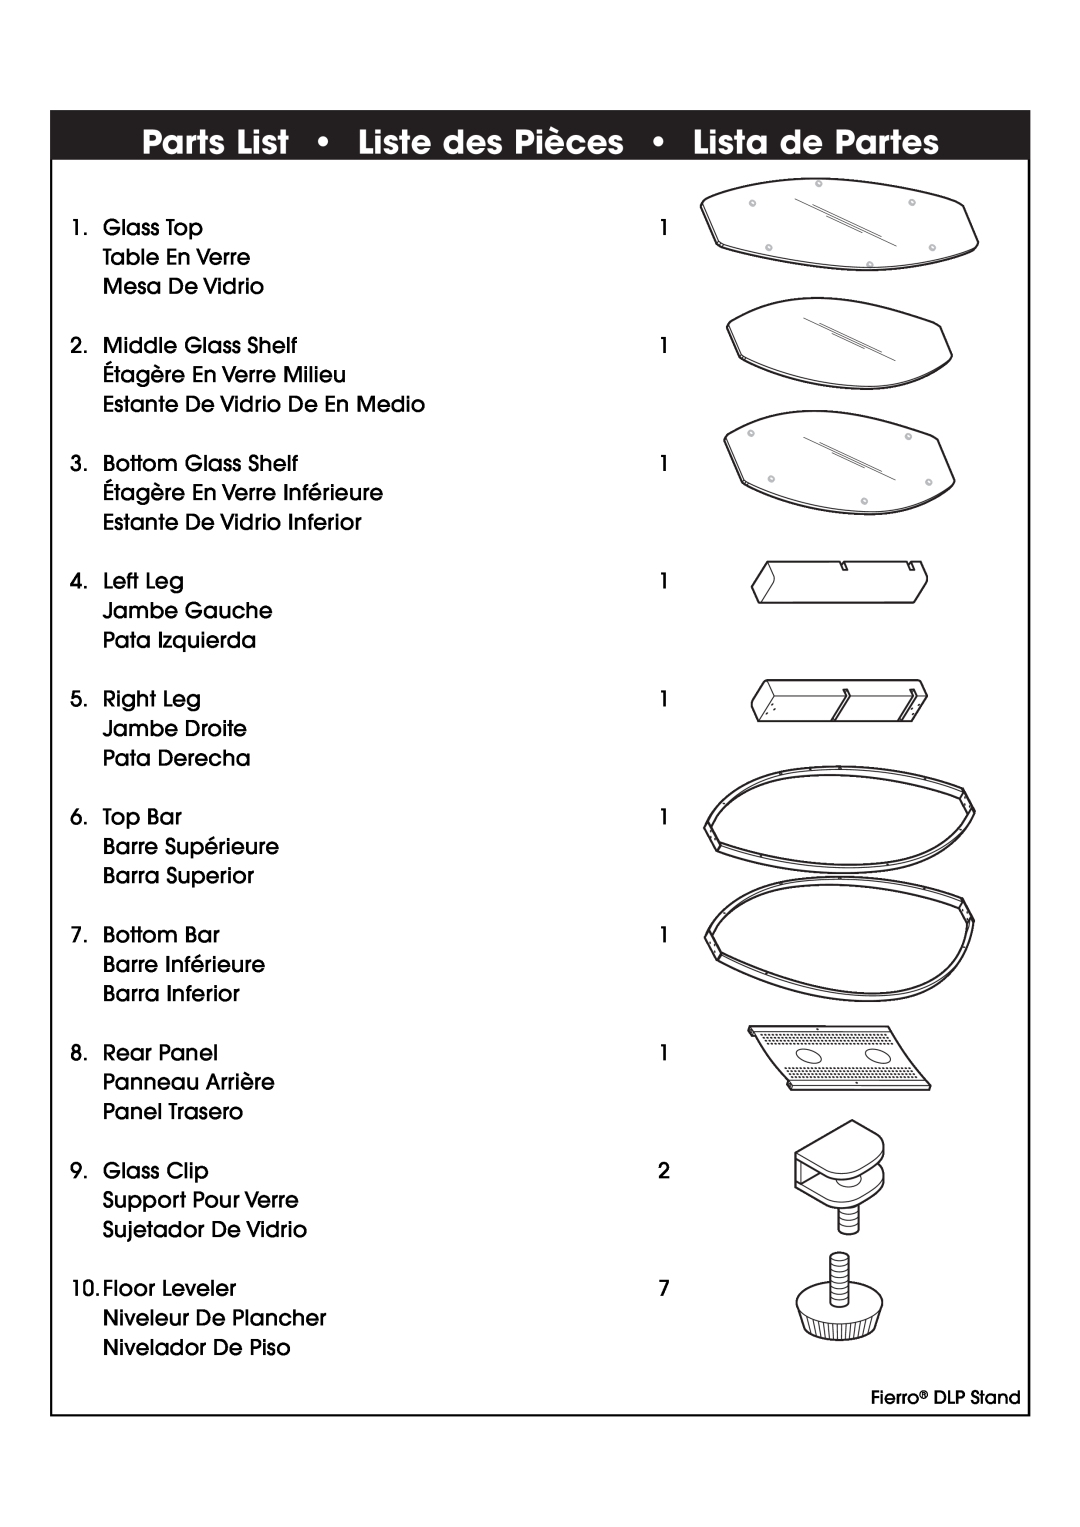 Studio RTA 402875 manual Parts List Liste des Pièces Lista de Partes 